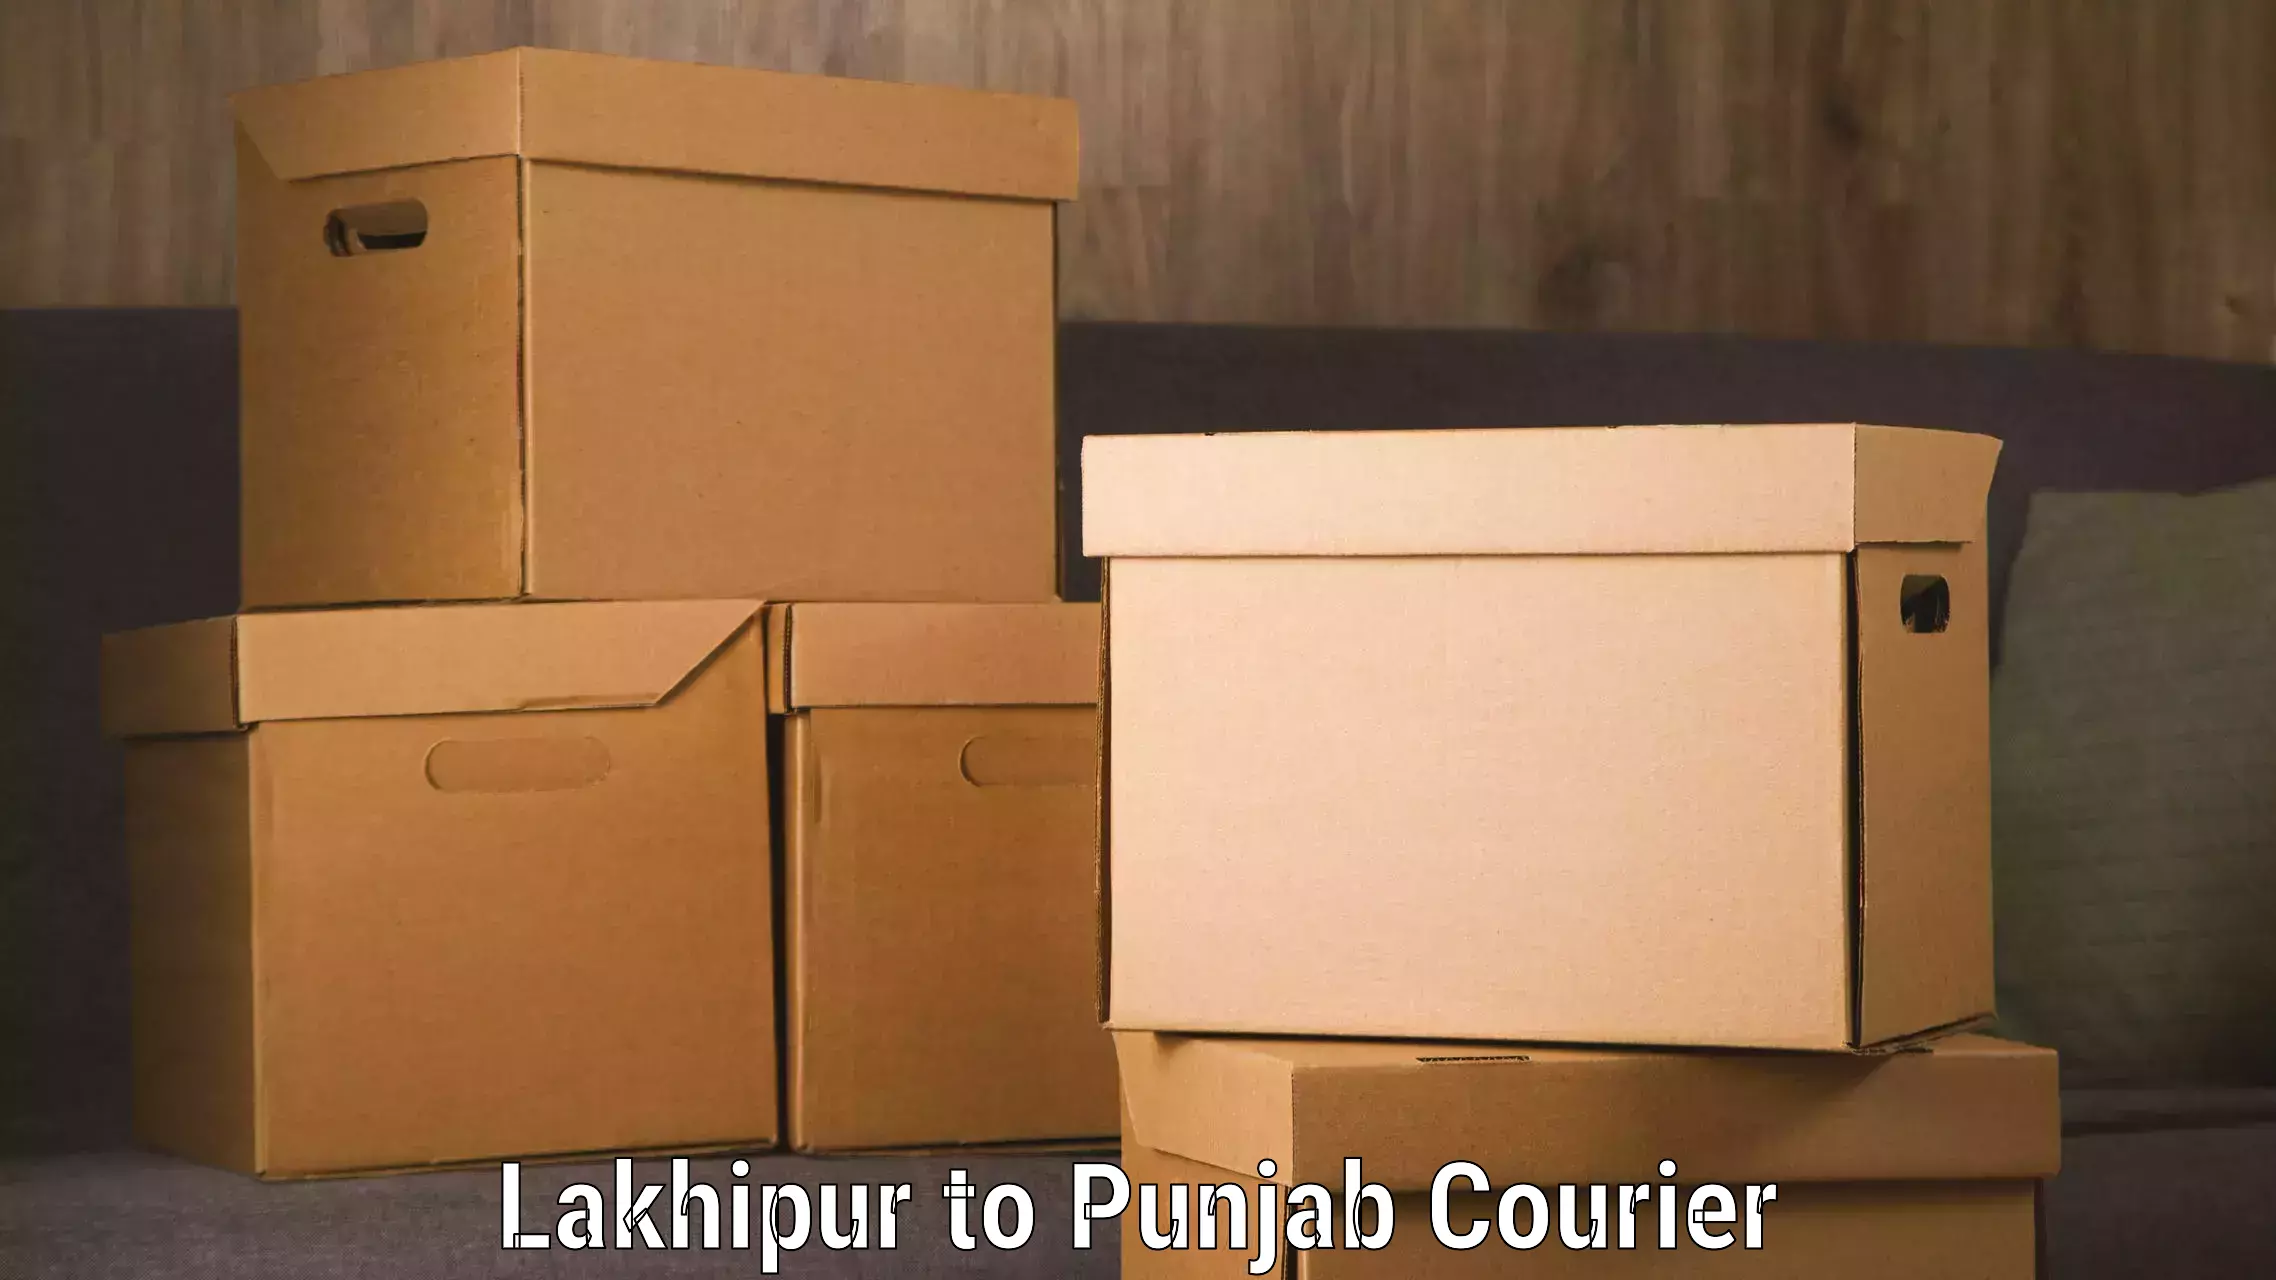 Luggage transfer service Lakhipur to Dhuri